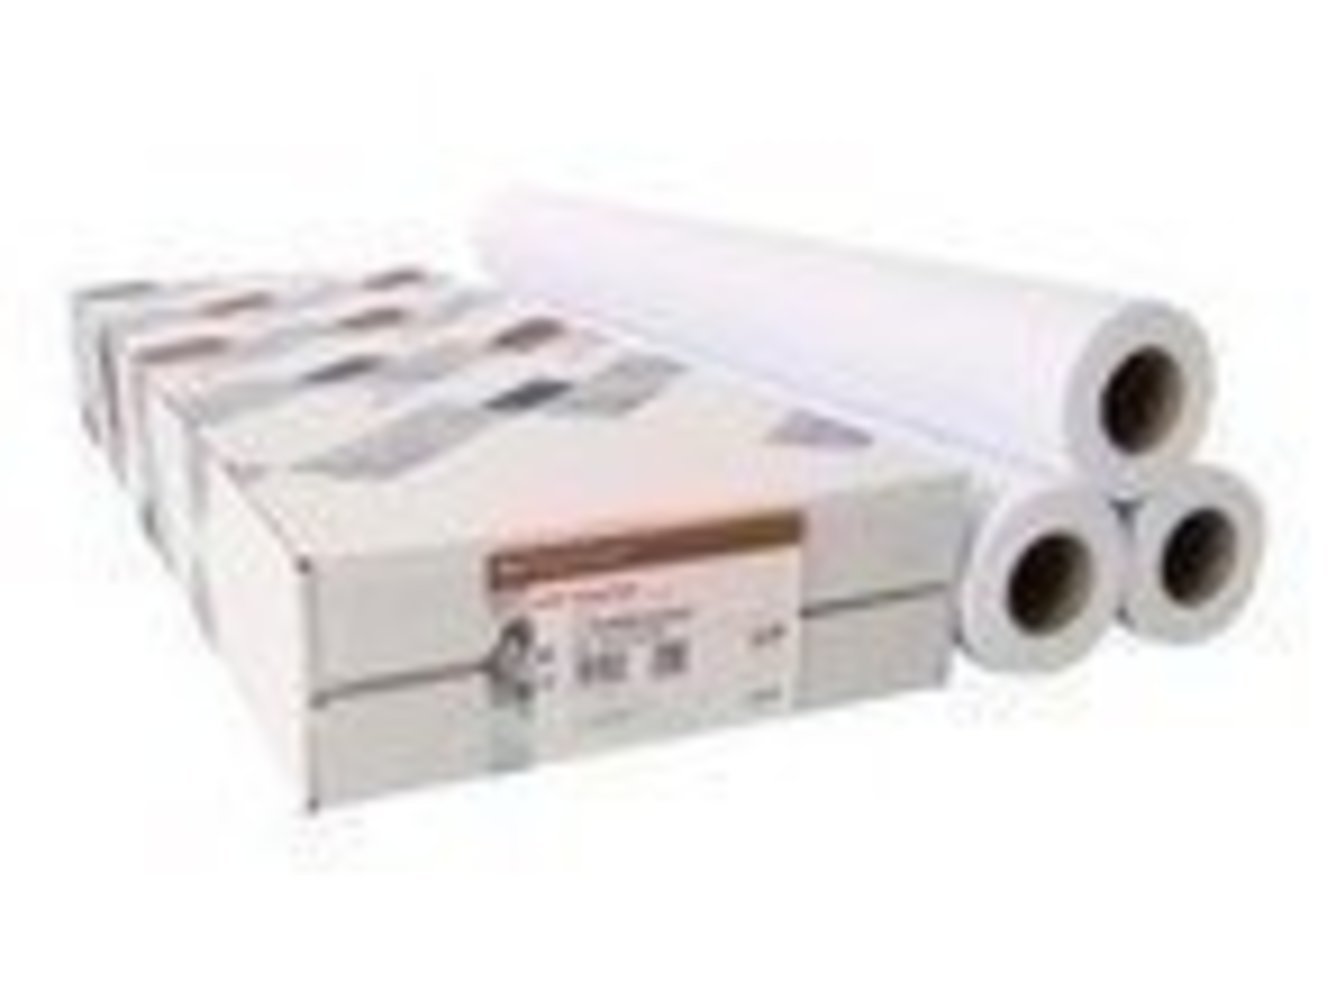 CANON OCE IJM021 Standard Papier 90g/m2 610mm x 50m 1 Rolle 3er-Pack